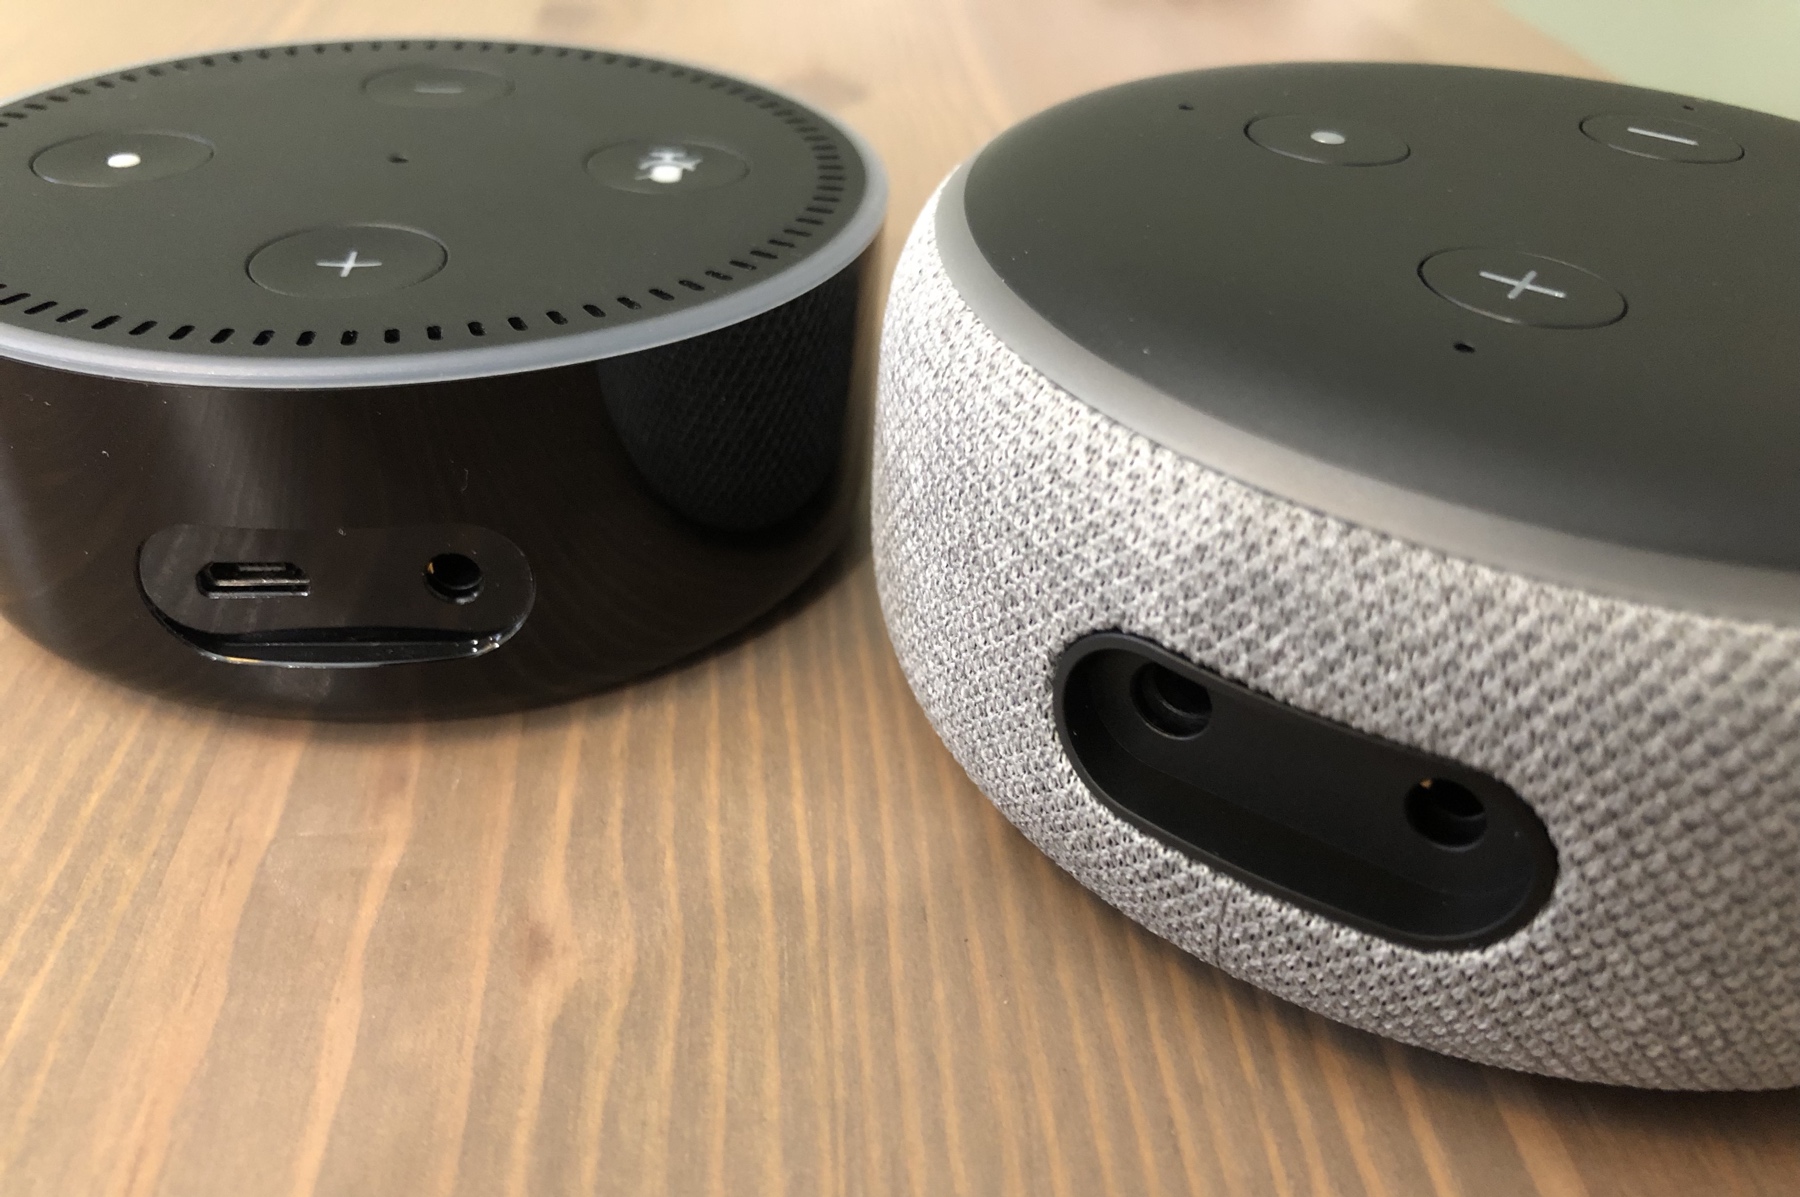 Echo Dot (2nd Gen) Smart Speaker w/ Alexa - Electronics - Woot